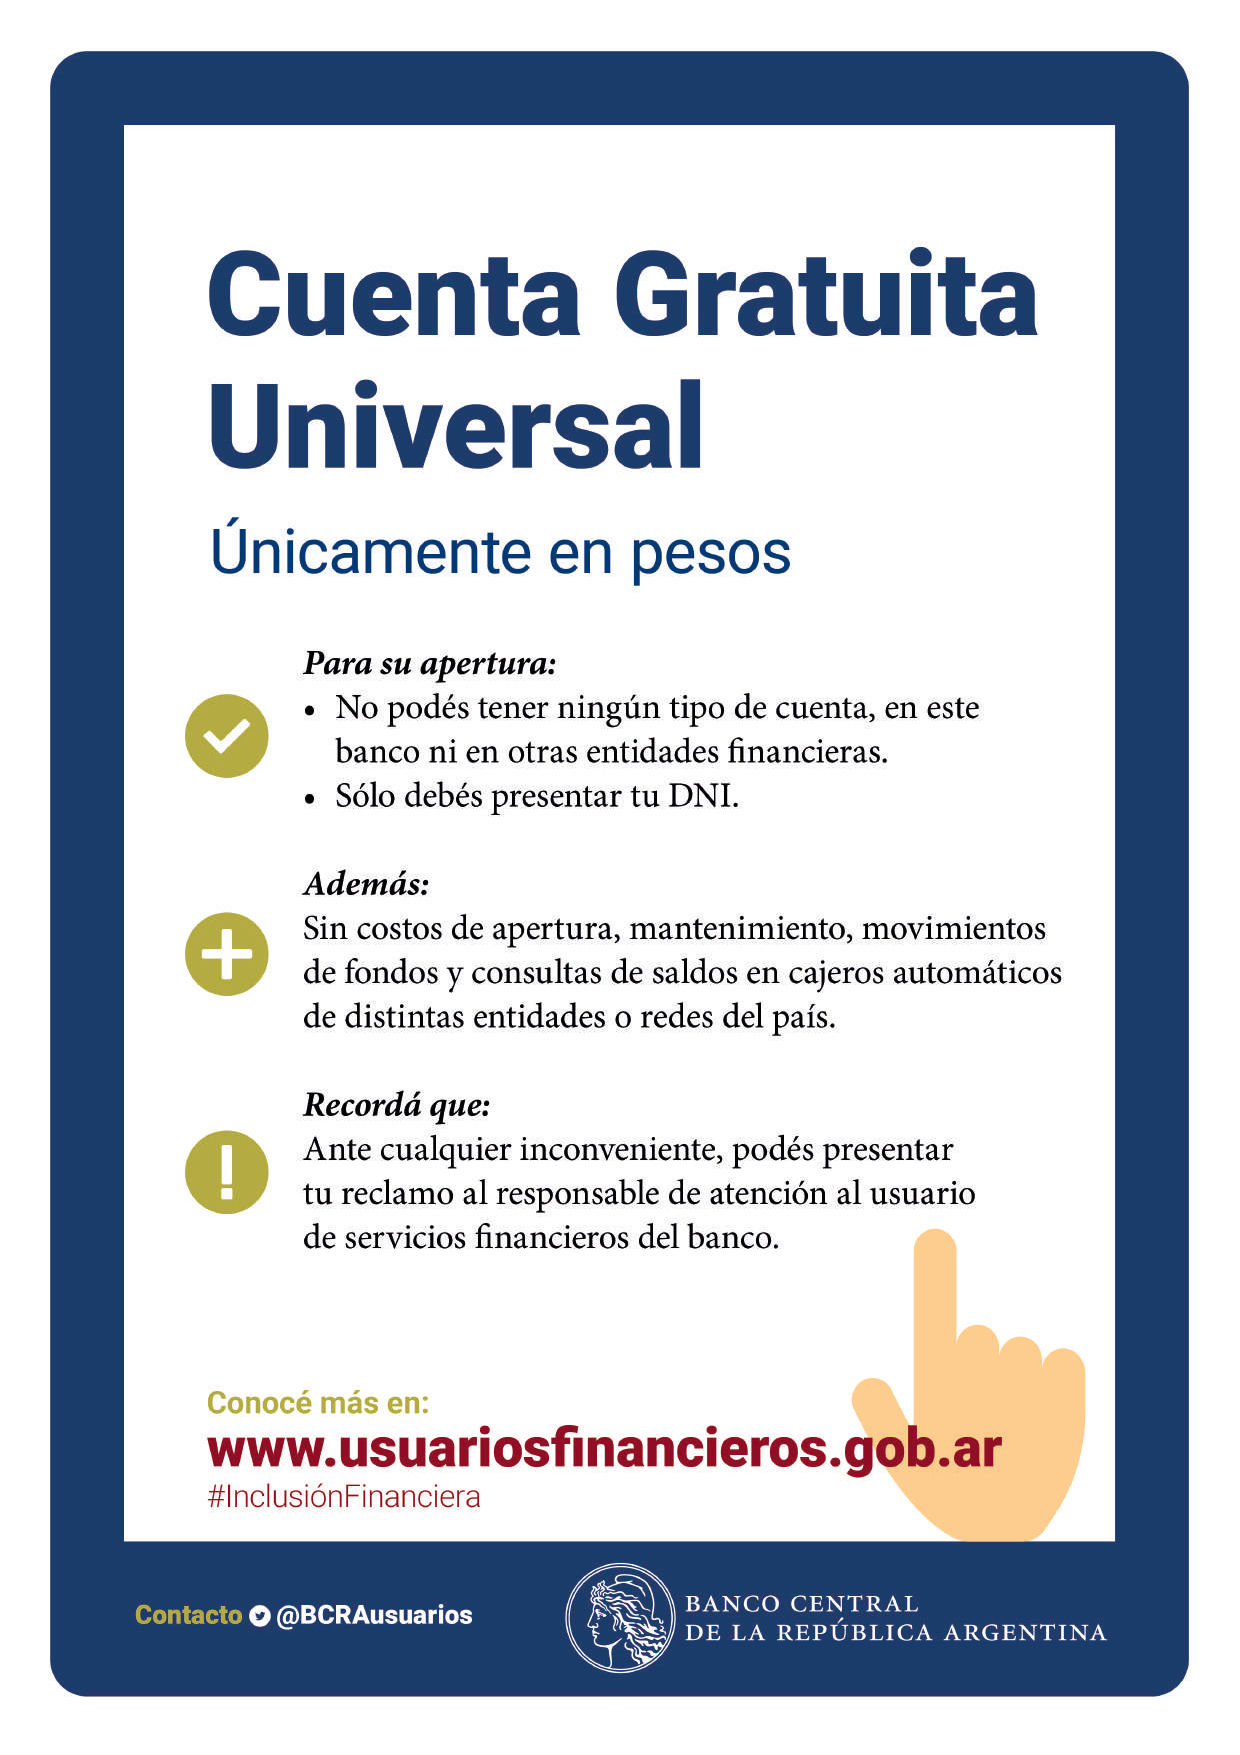 Información sobre la Cuenta Gratuita Universal